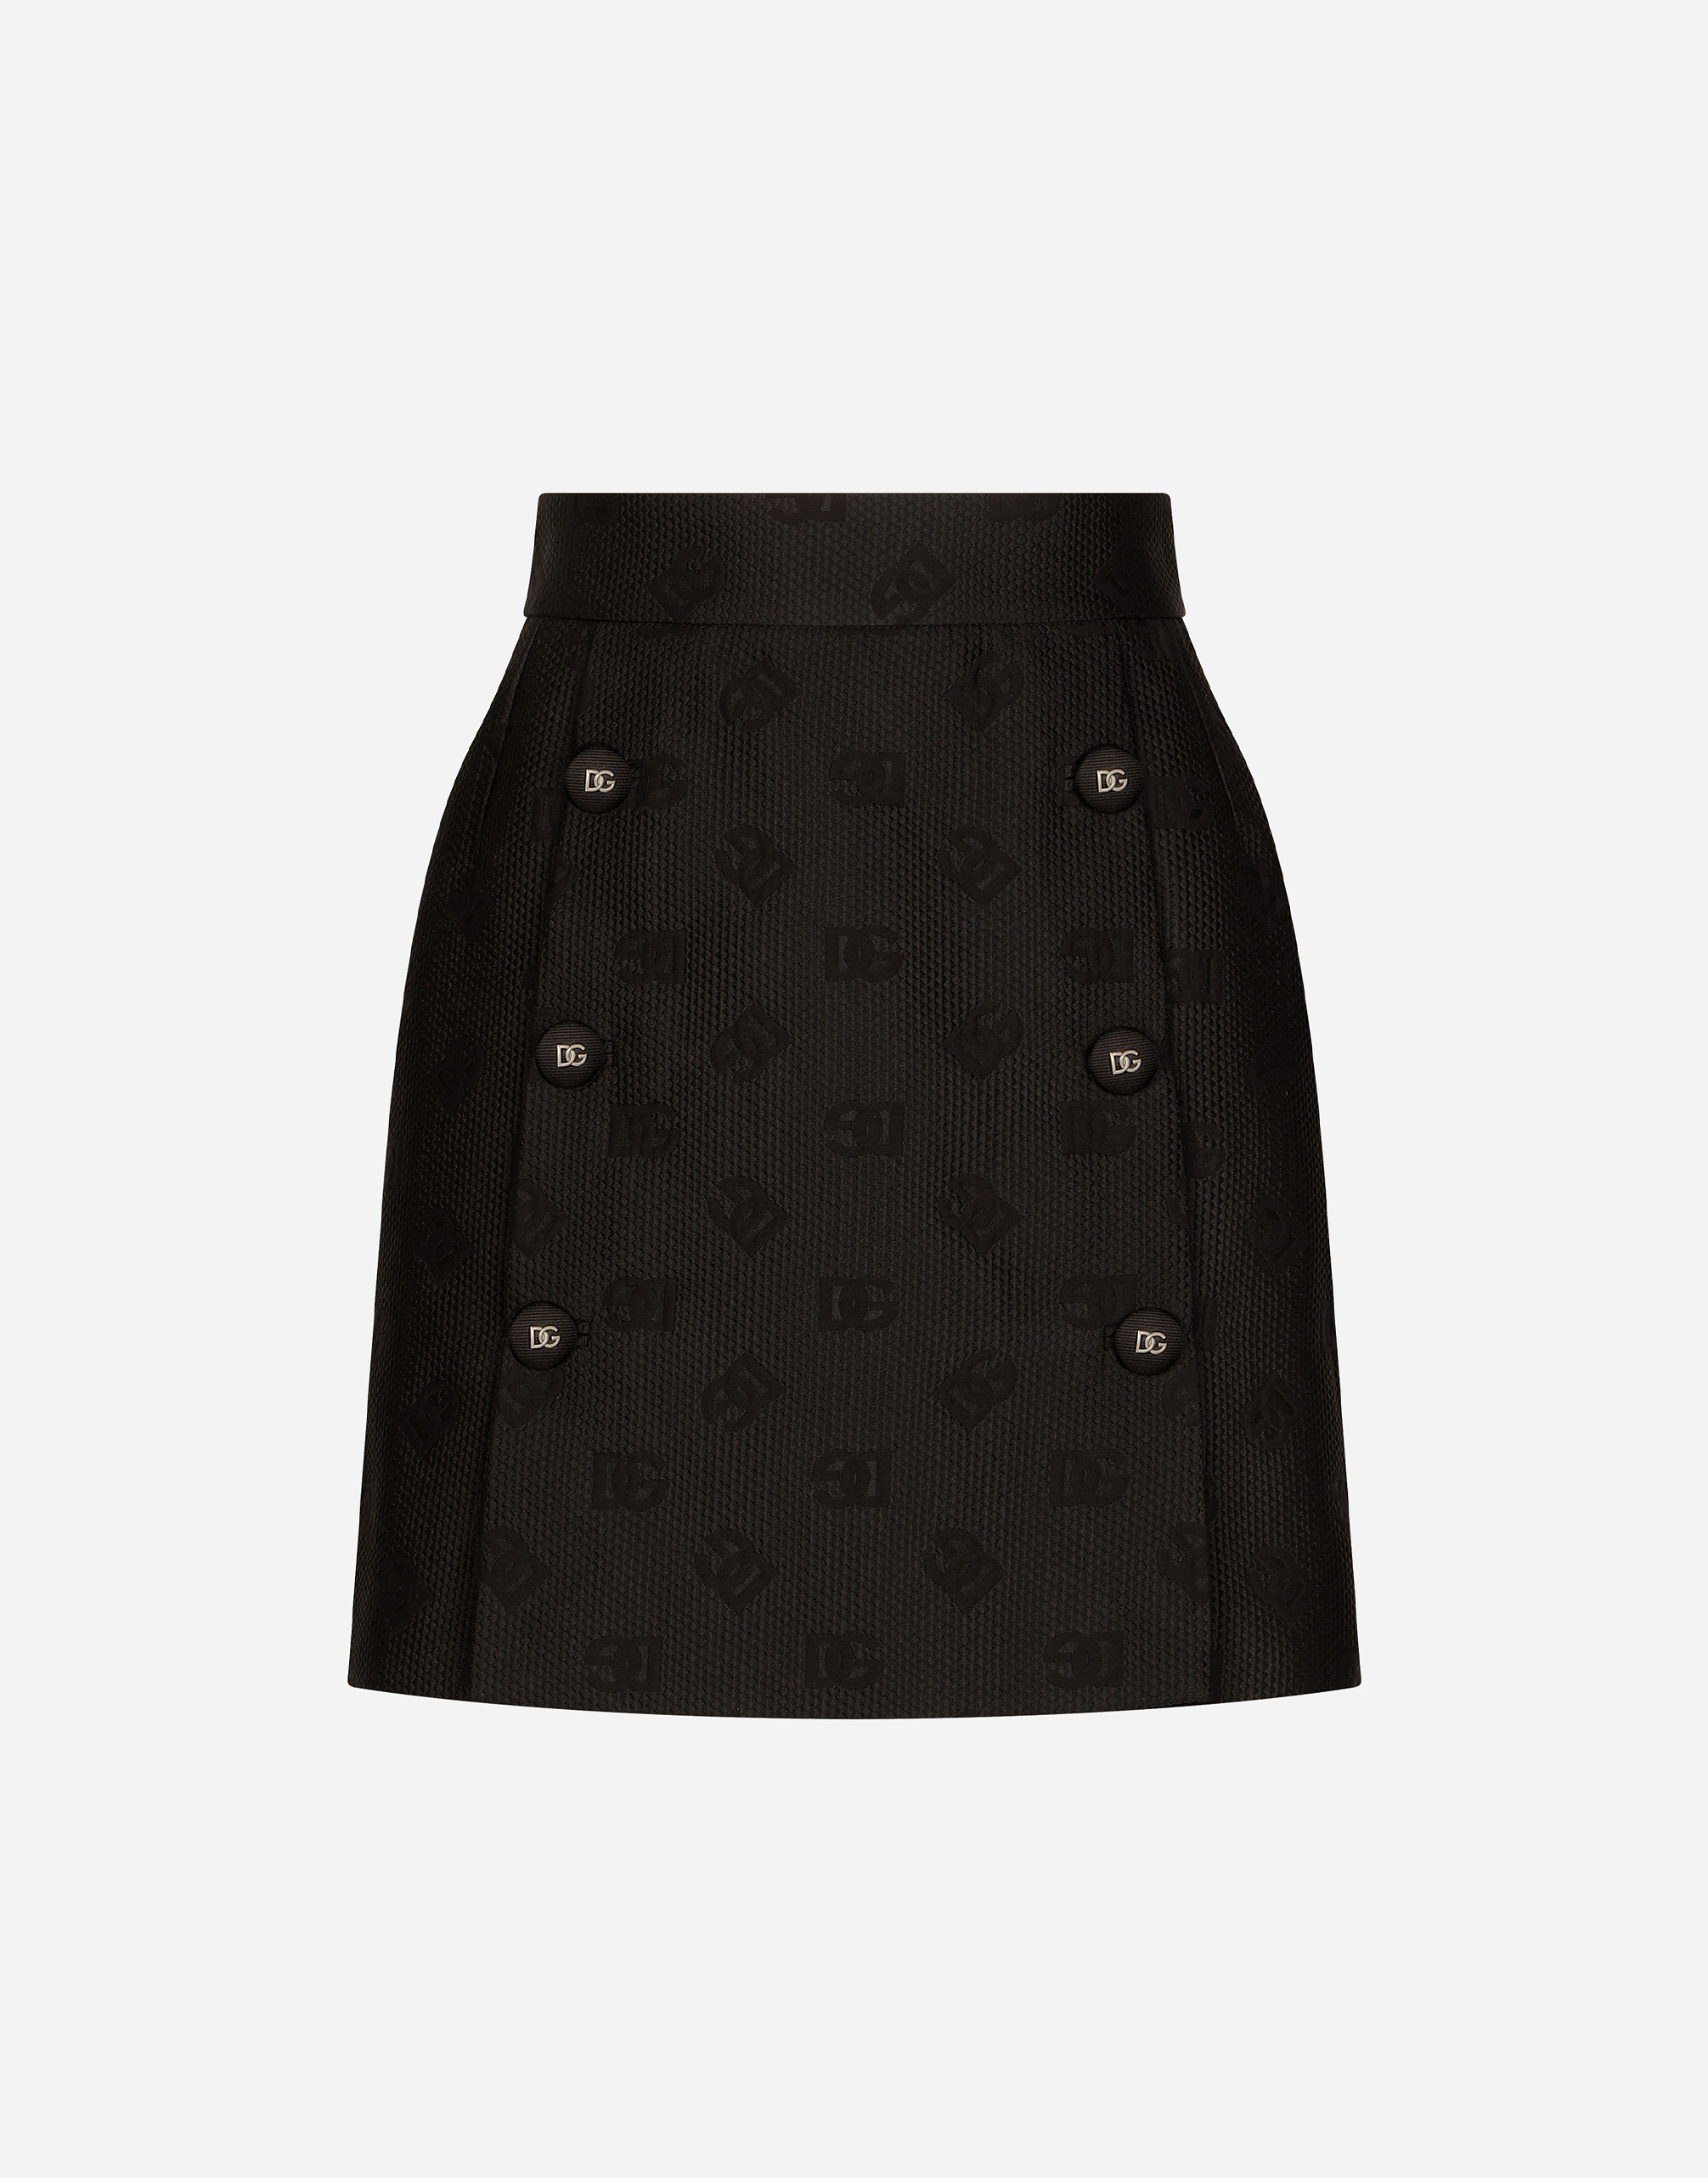 Jacquard miniskirt with all-over DG logo in Black